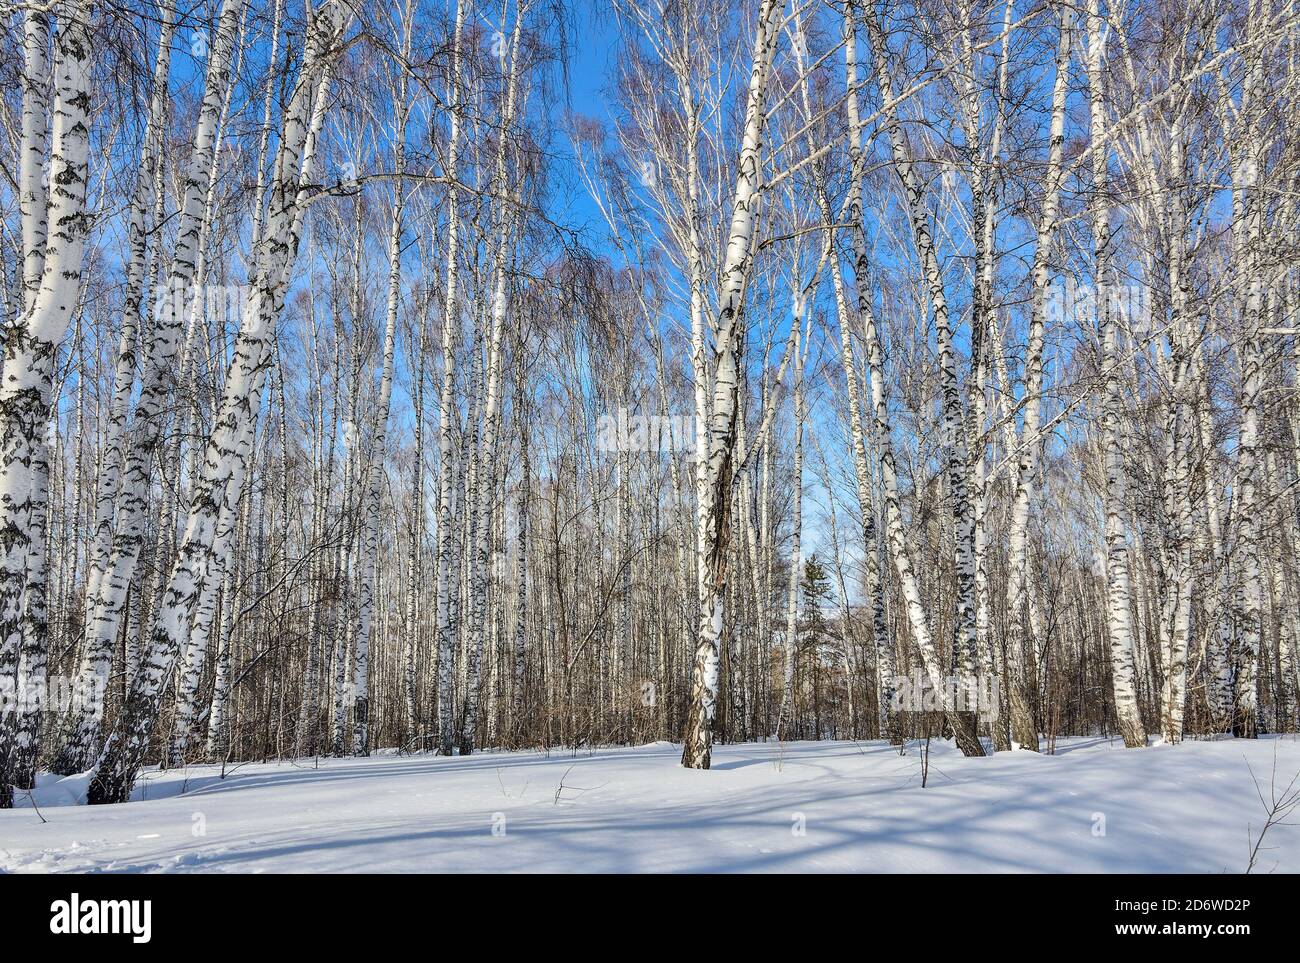 Wunderschöne Winterlandschaft - schneeweißer Birkenwald. Weißer klarer Schnee, weiße Birkenstämme mit Sonnenlicht beleuchtet auf hellblauem Himmel Hintergrund - Stockfoto